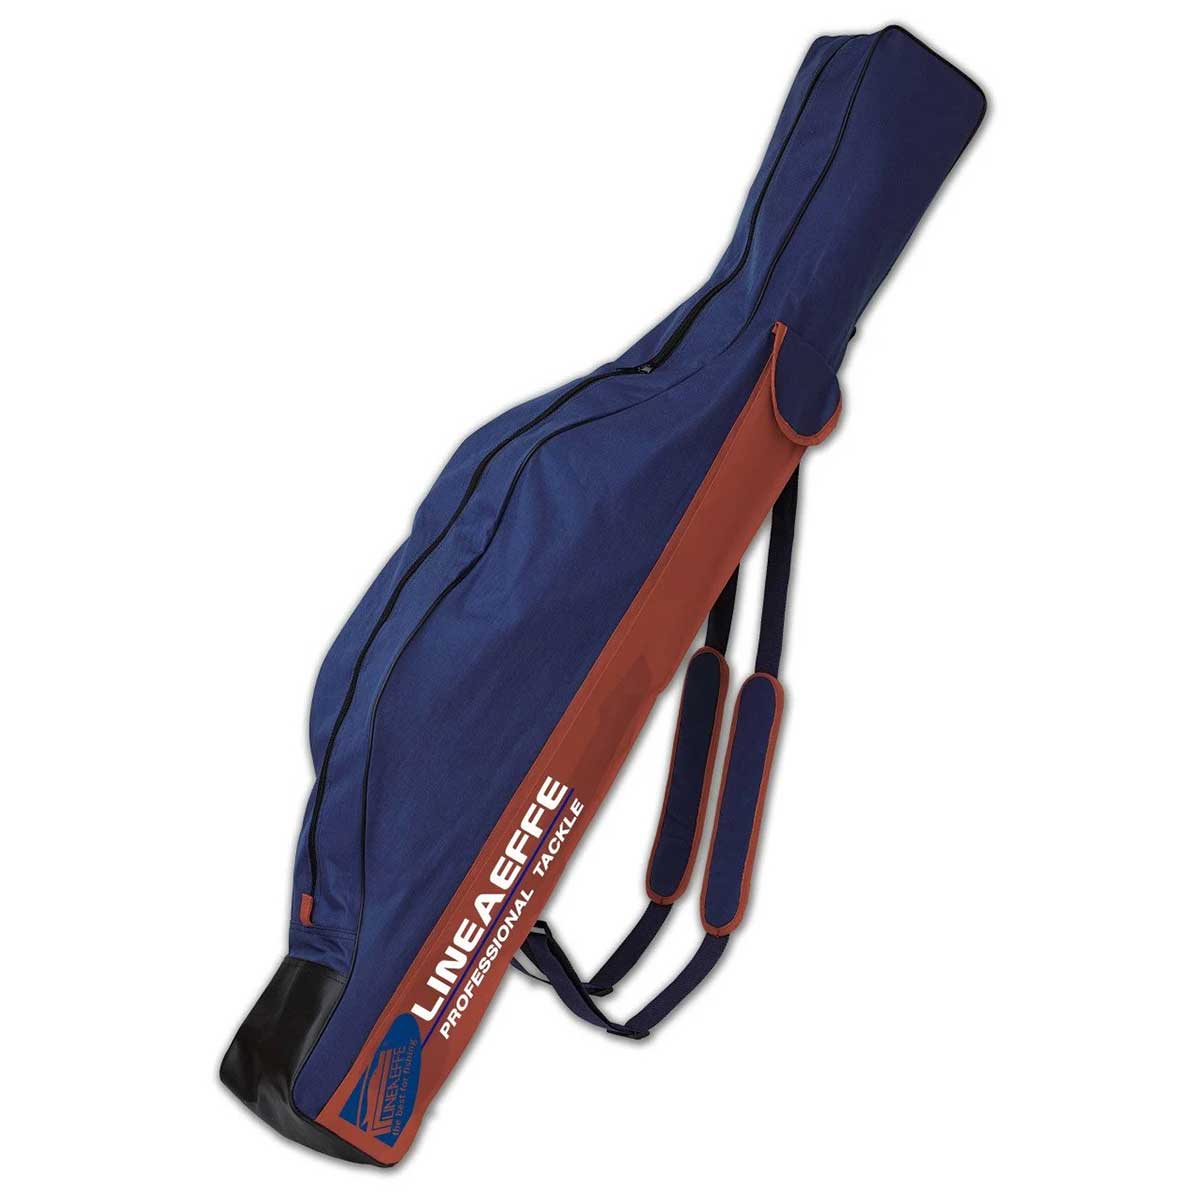 Lineaeffe Fodero Pro Cordura 140cm Kamış Çantası,140cm kapalı boy,lineaeffe kalitesinde teleskobik ve surf kamışlarınızı muhafaza edebileceğiniz kamış çantası